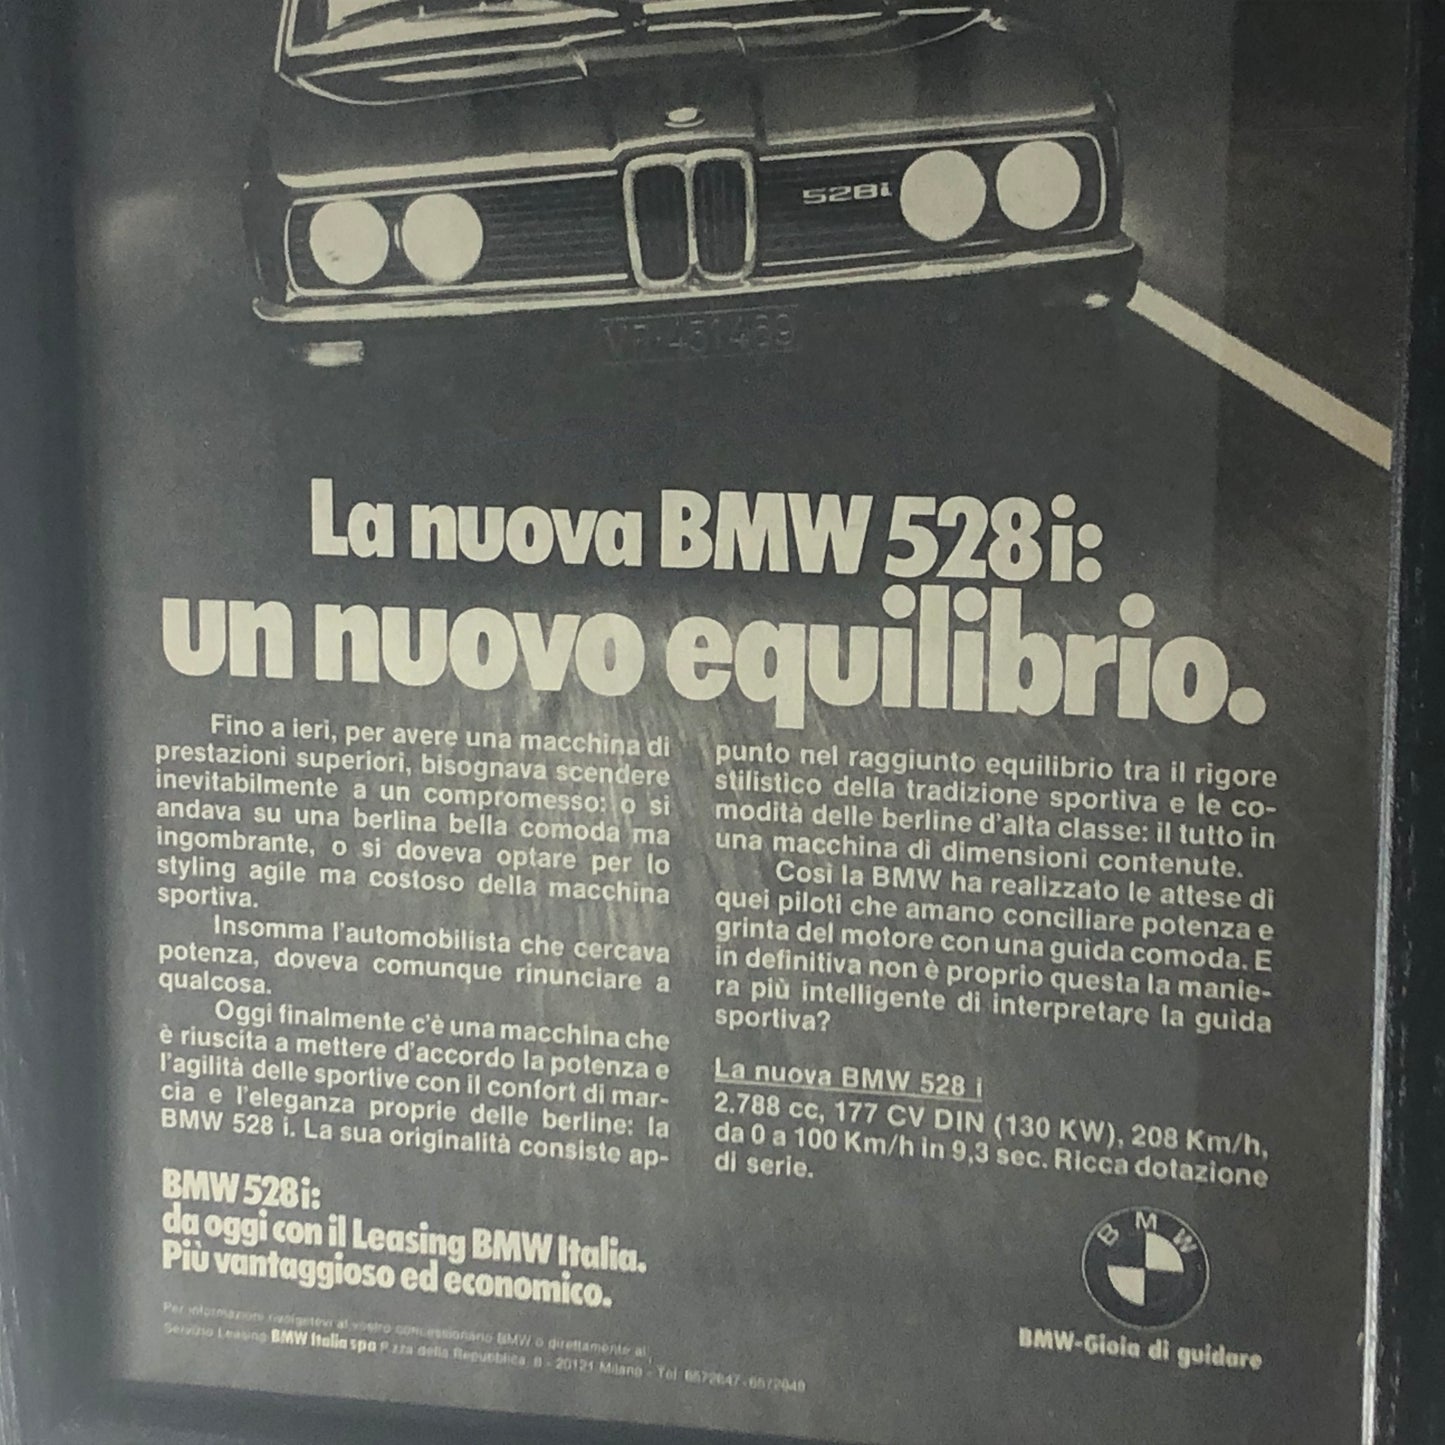 BMW, Pubblicità Anno 1978 la Nuova BMW 528i un Nuovo Equilibrio